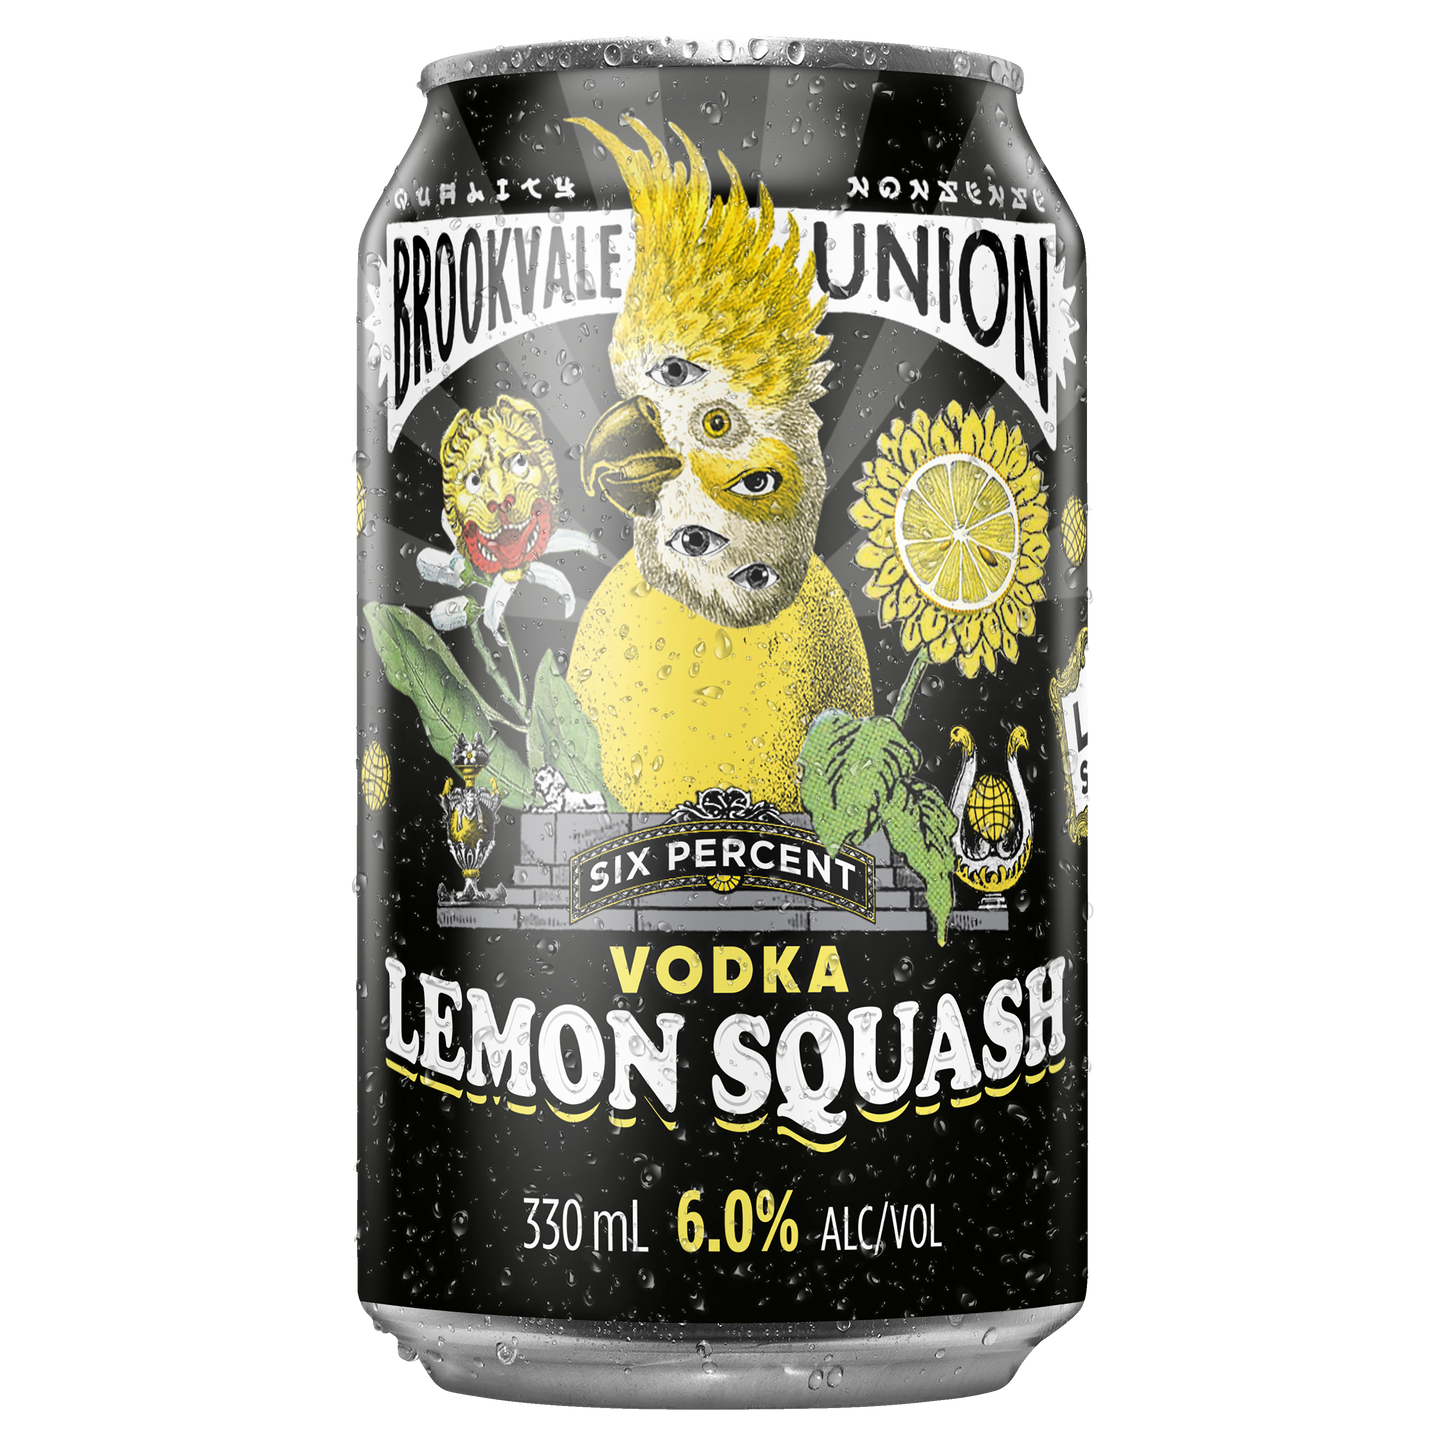 Brookvale Union Vodka Lemon Squash 6% Cans 330ml